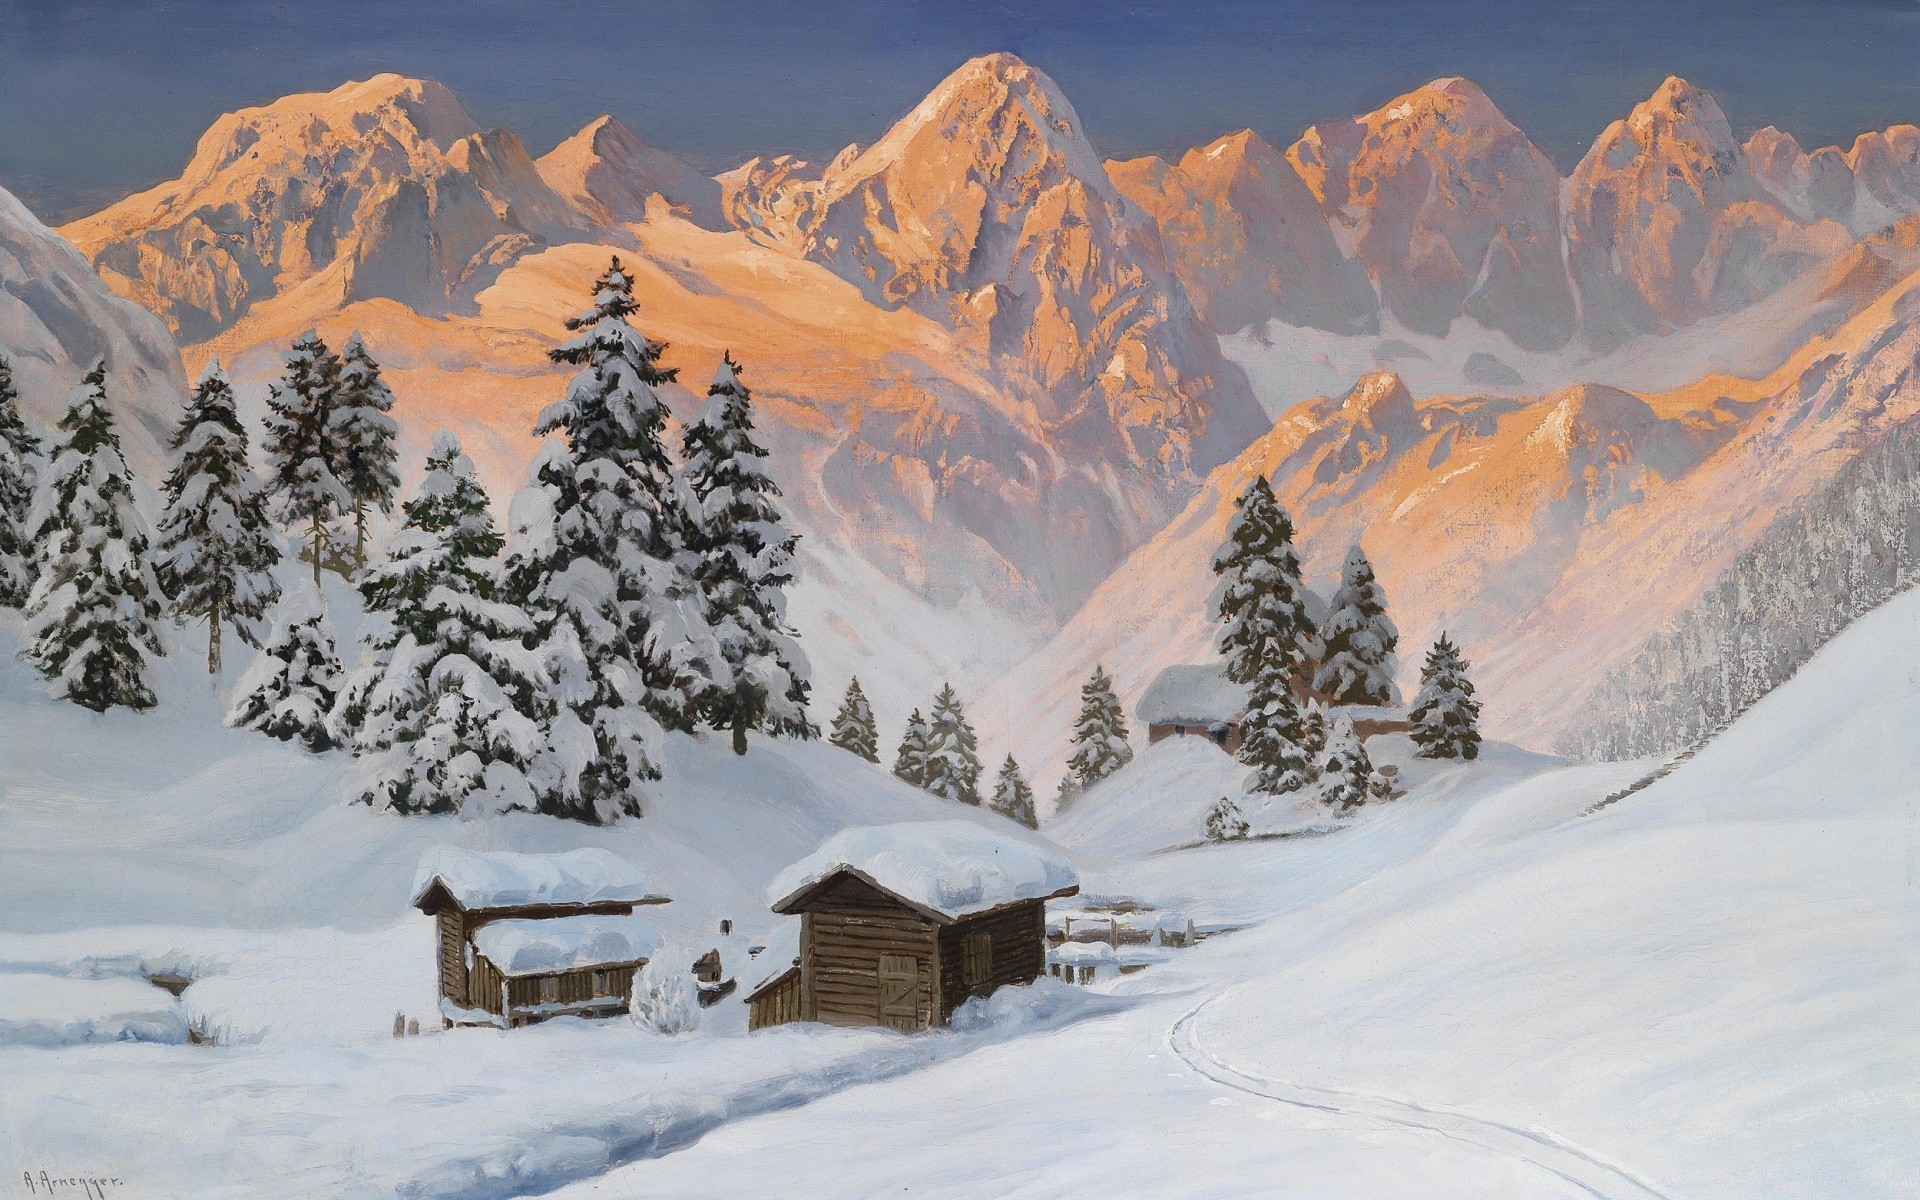 рисунки снег зима горы живописный холодная лед горный пик пейзаж курорт холм альпийская долина древесины замороженные снежное эвергрин панорама дерево путешествия